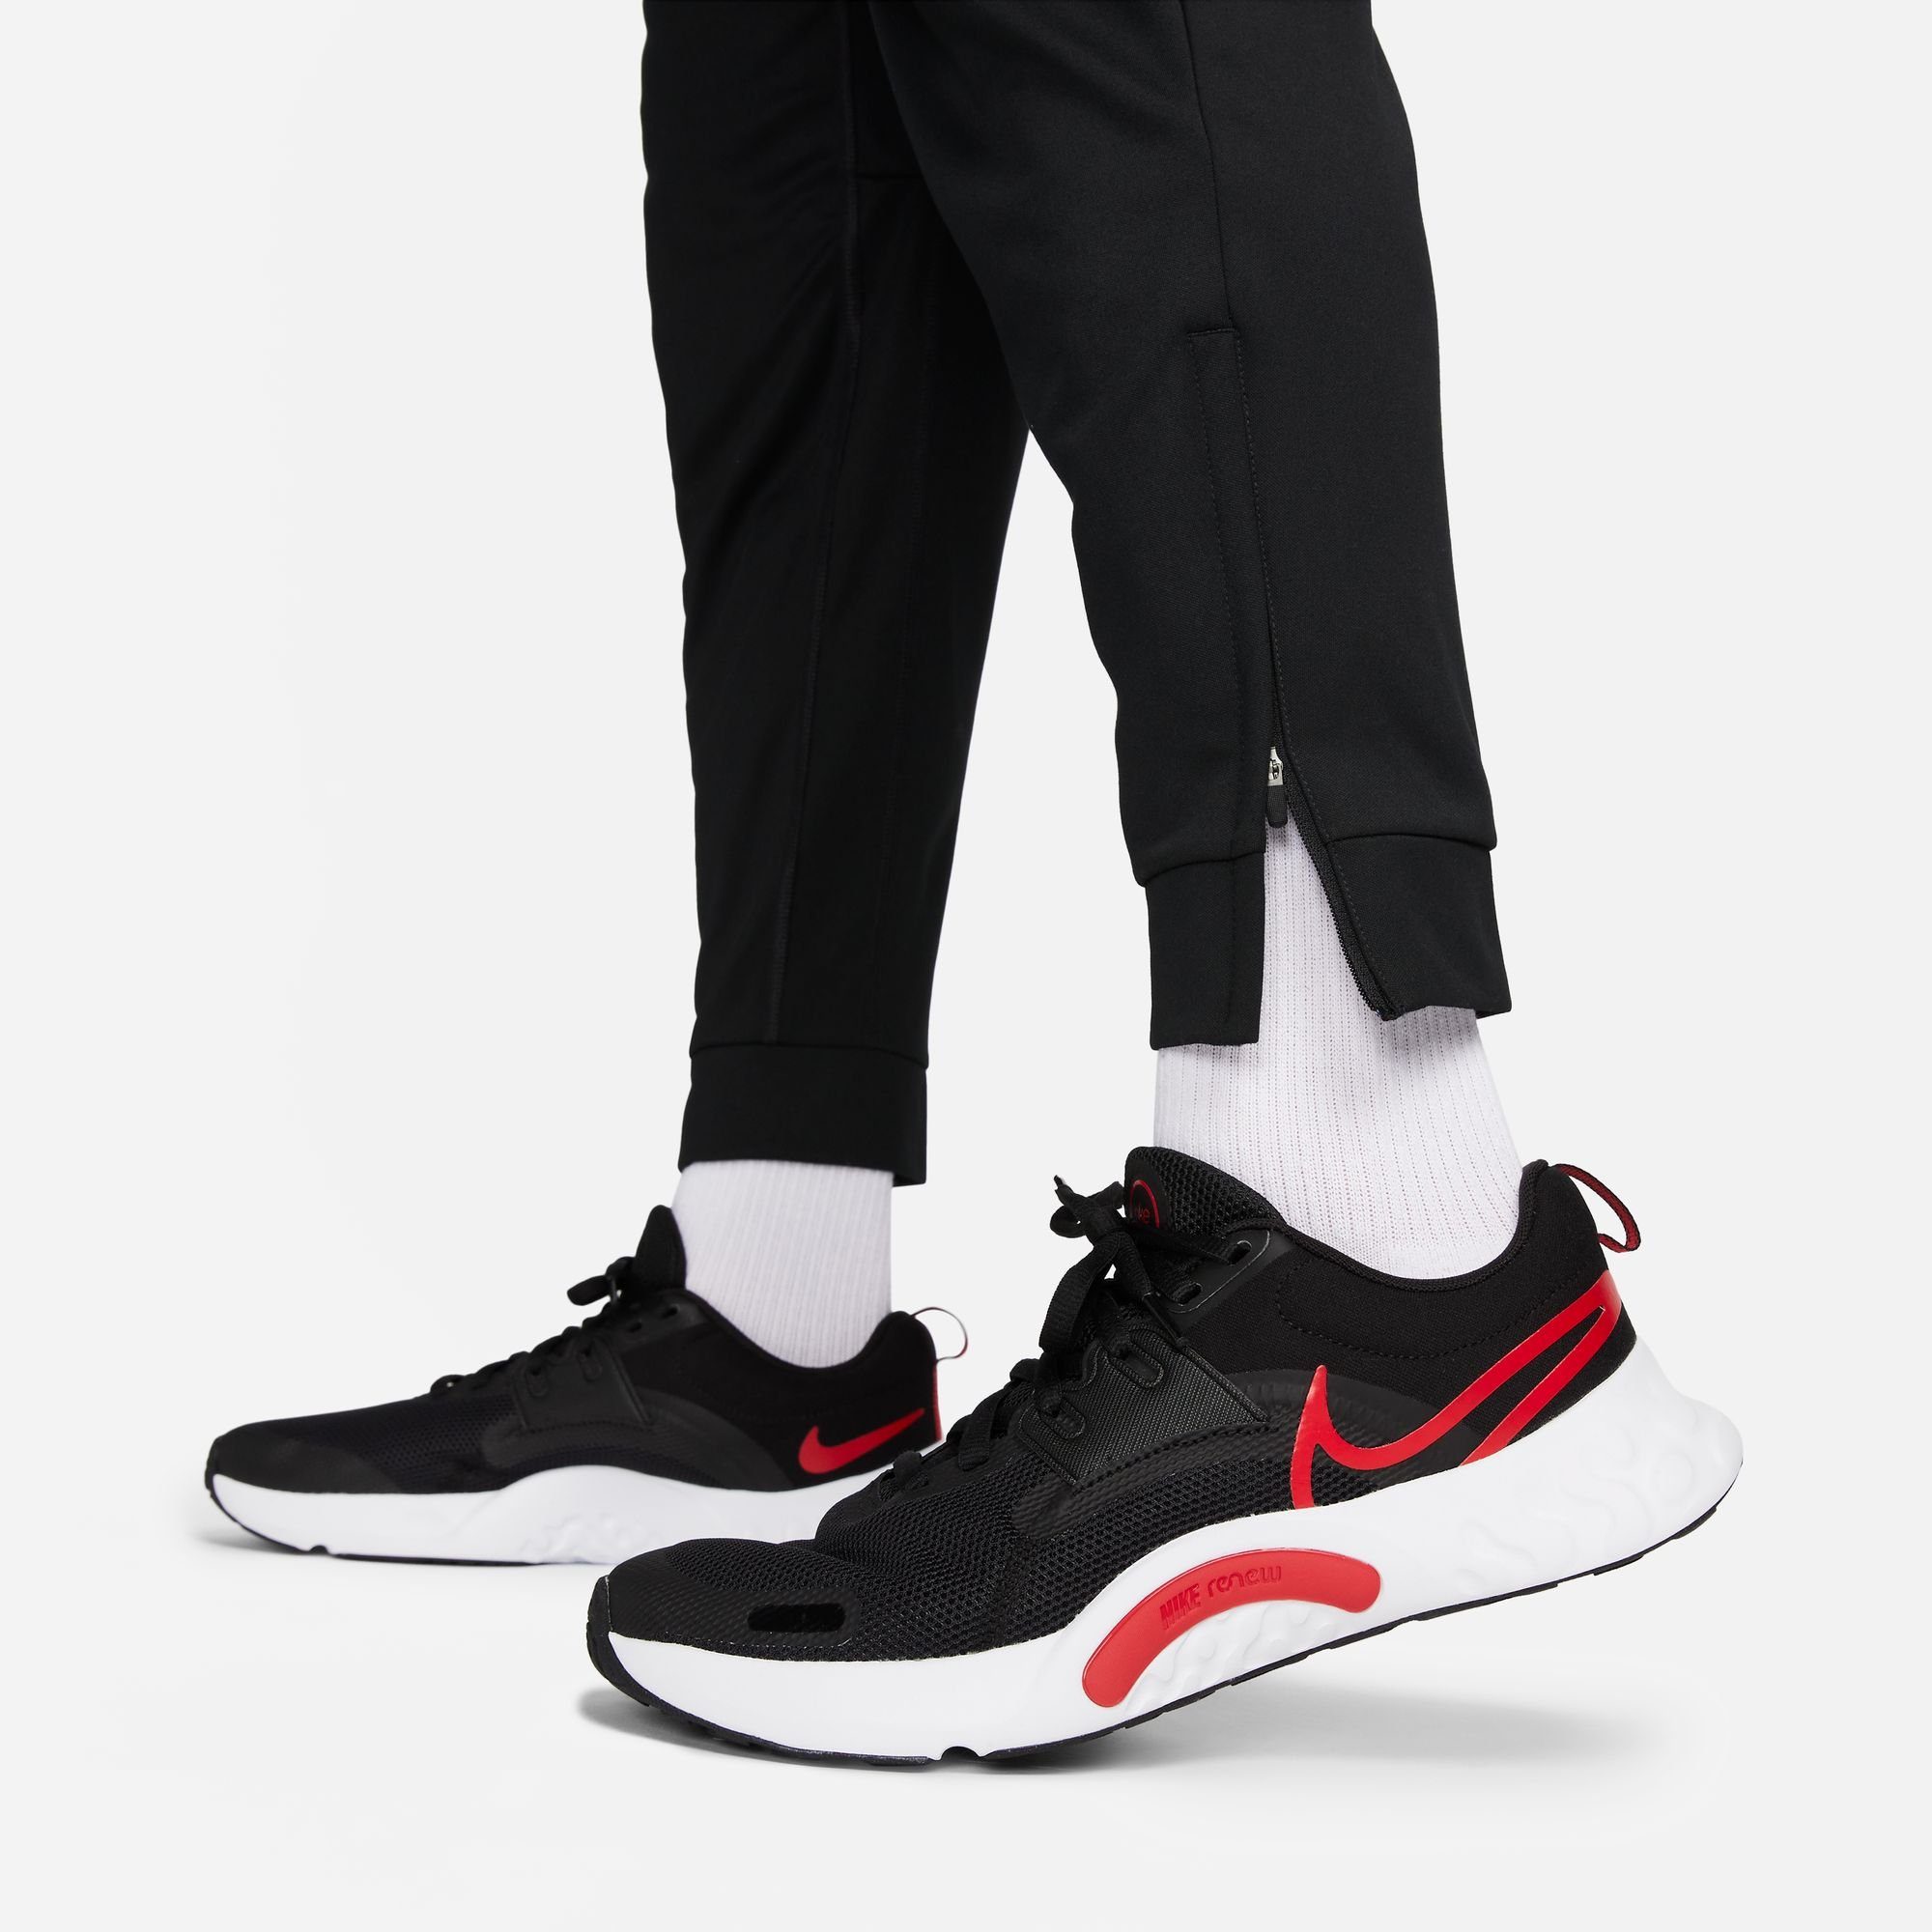 DRI-FIT PANTS TOTALITY FITNESS MEN'S Nike Trainingshose BLACK/WHITE TAPERED